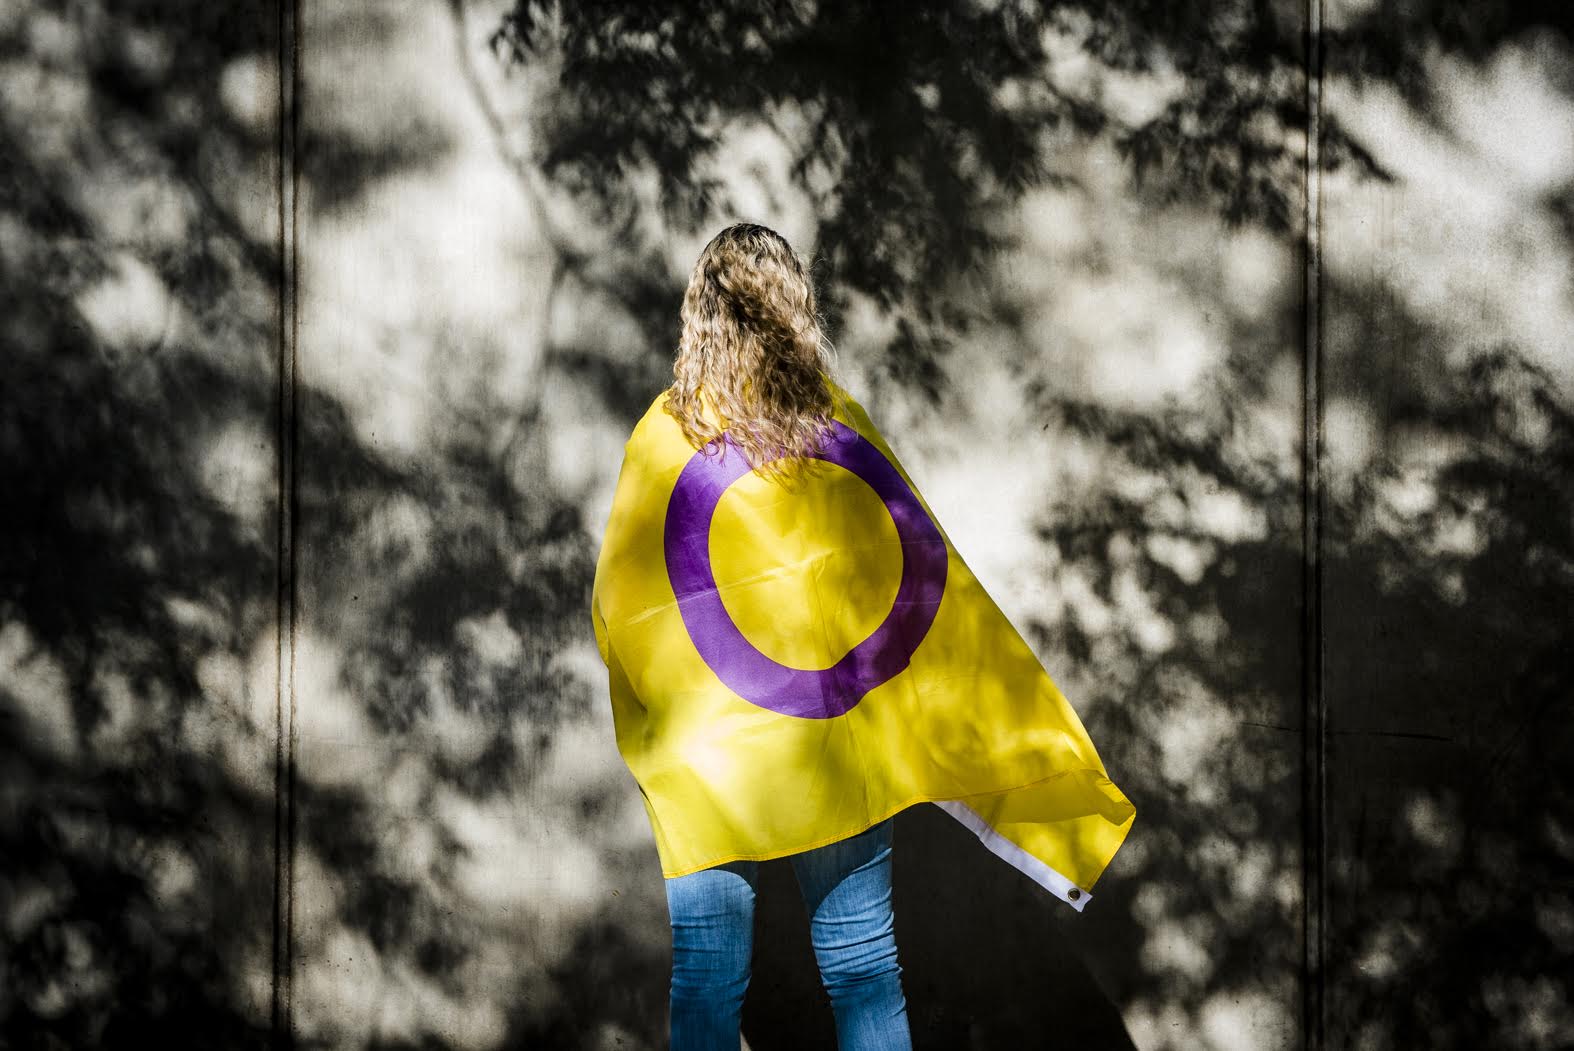 La bandera intersex fue creada en 2013 por Morgan Carpenter, activista intersex australiano y codirector de Intersex Human Rights Australia (IHRA).